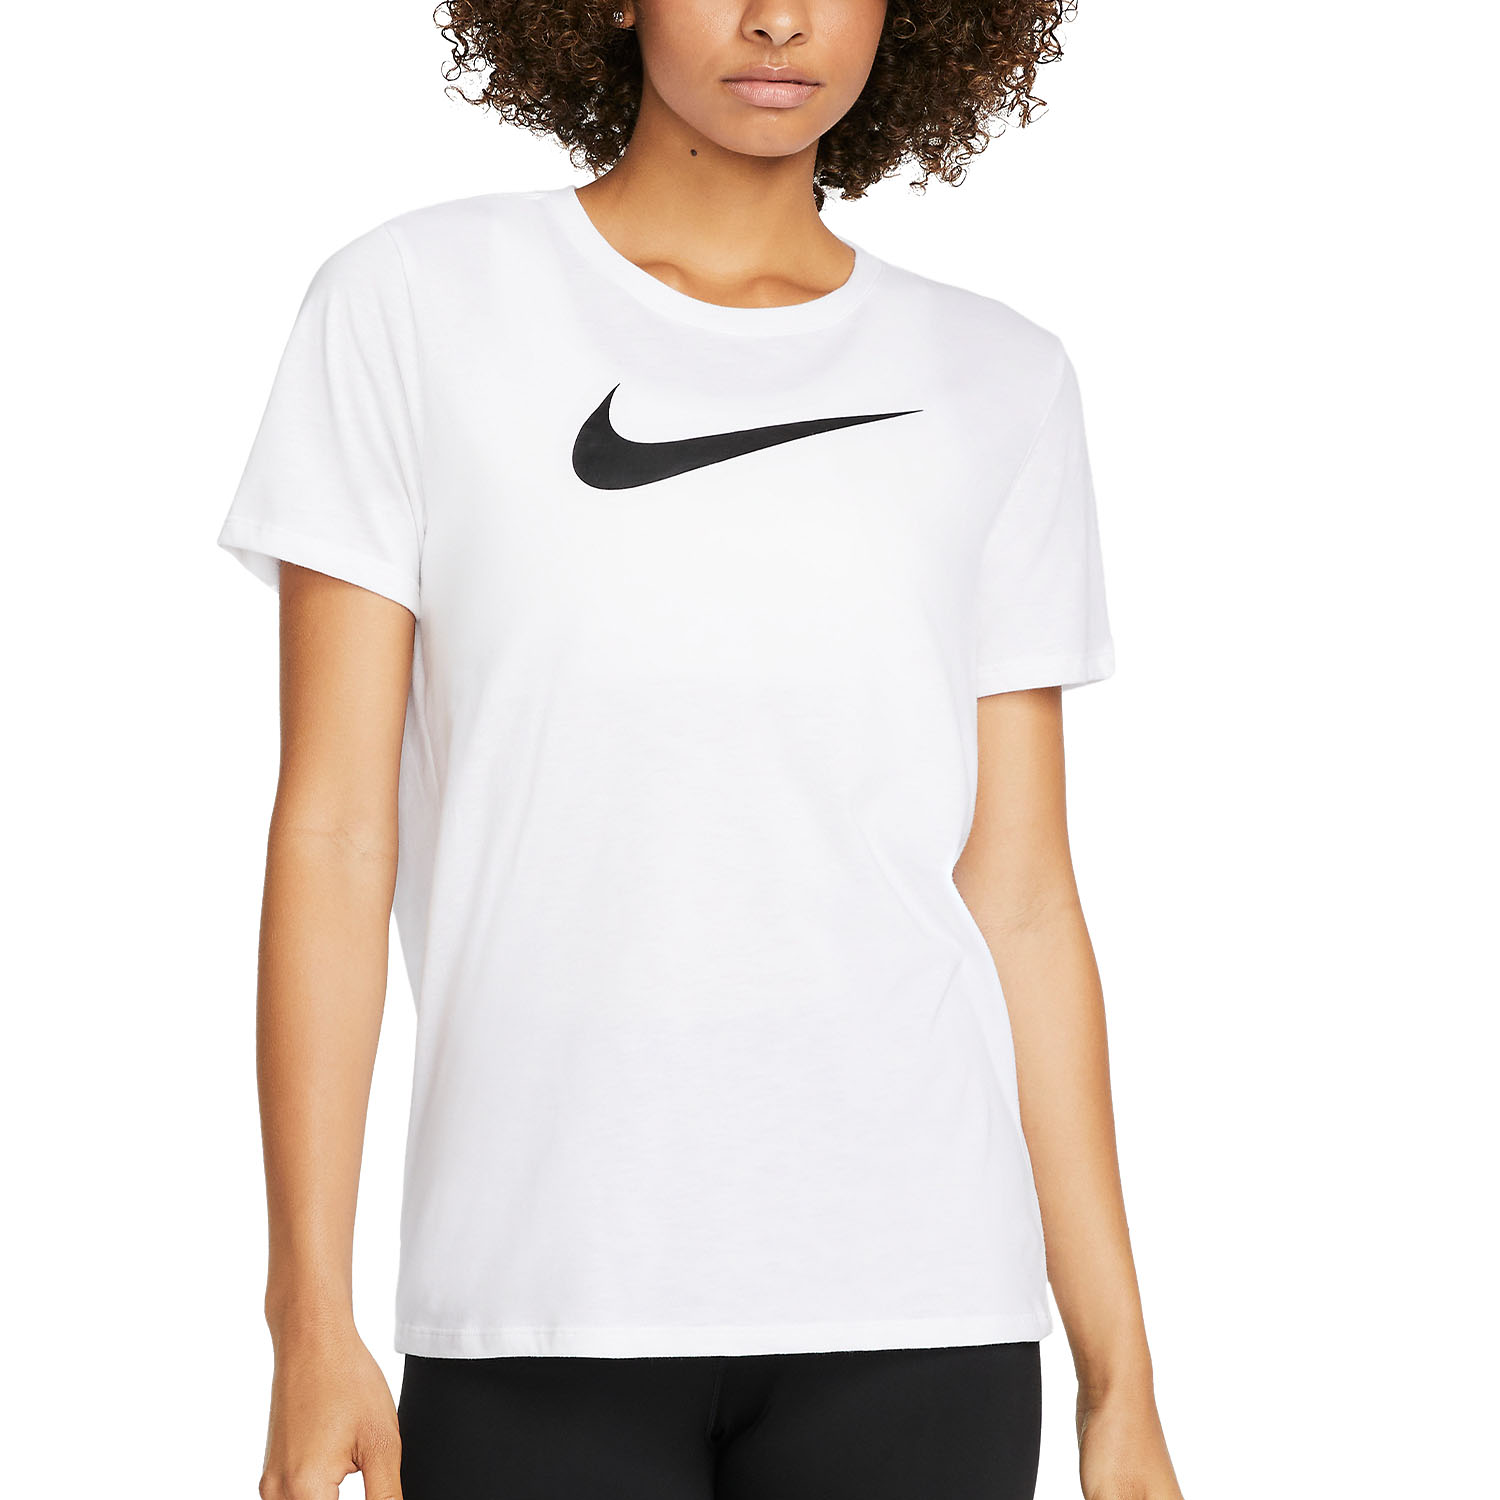 Nike Dri-FIT Women's Training T-Shirt - White/Black